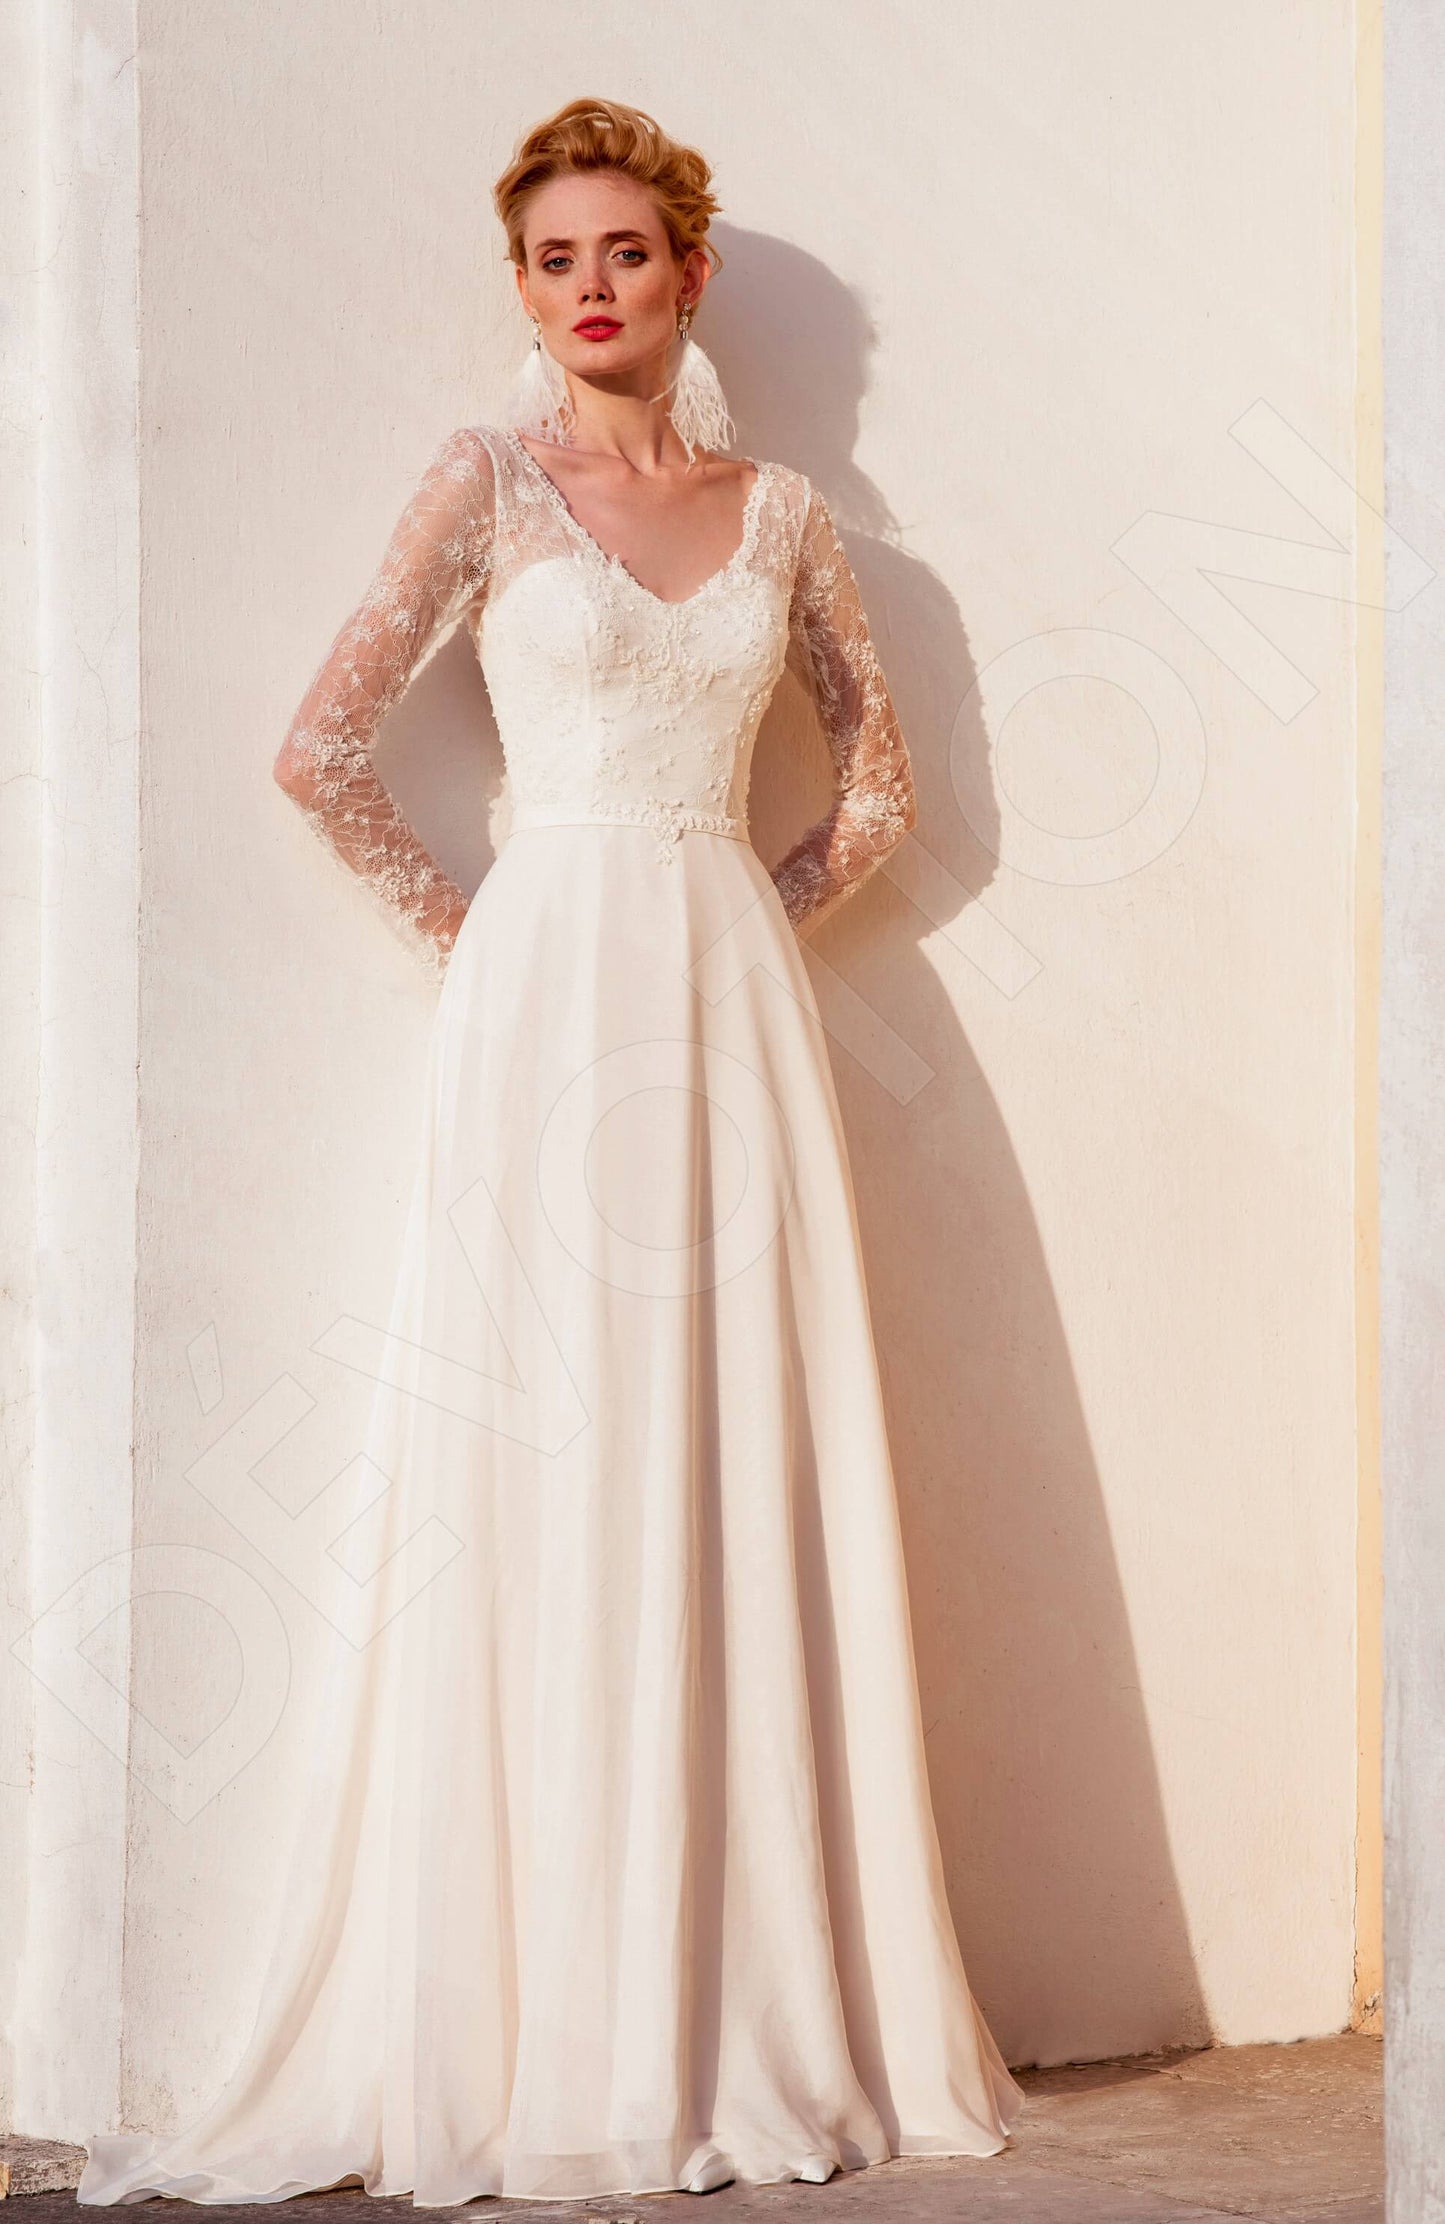 Miltia Open back A-line Long sleeve Wedding Dress Front